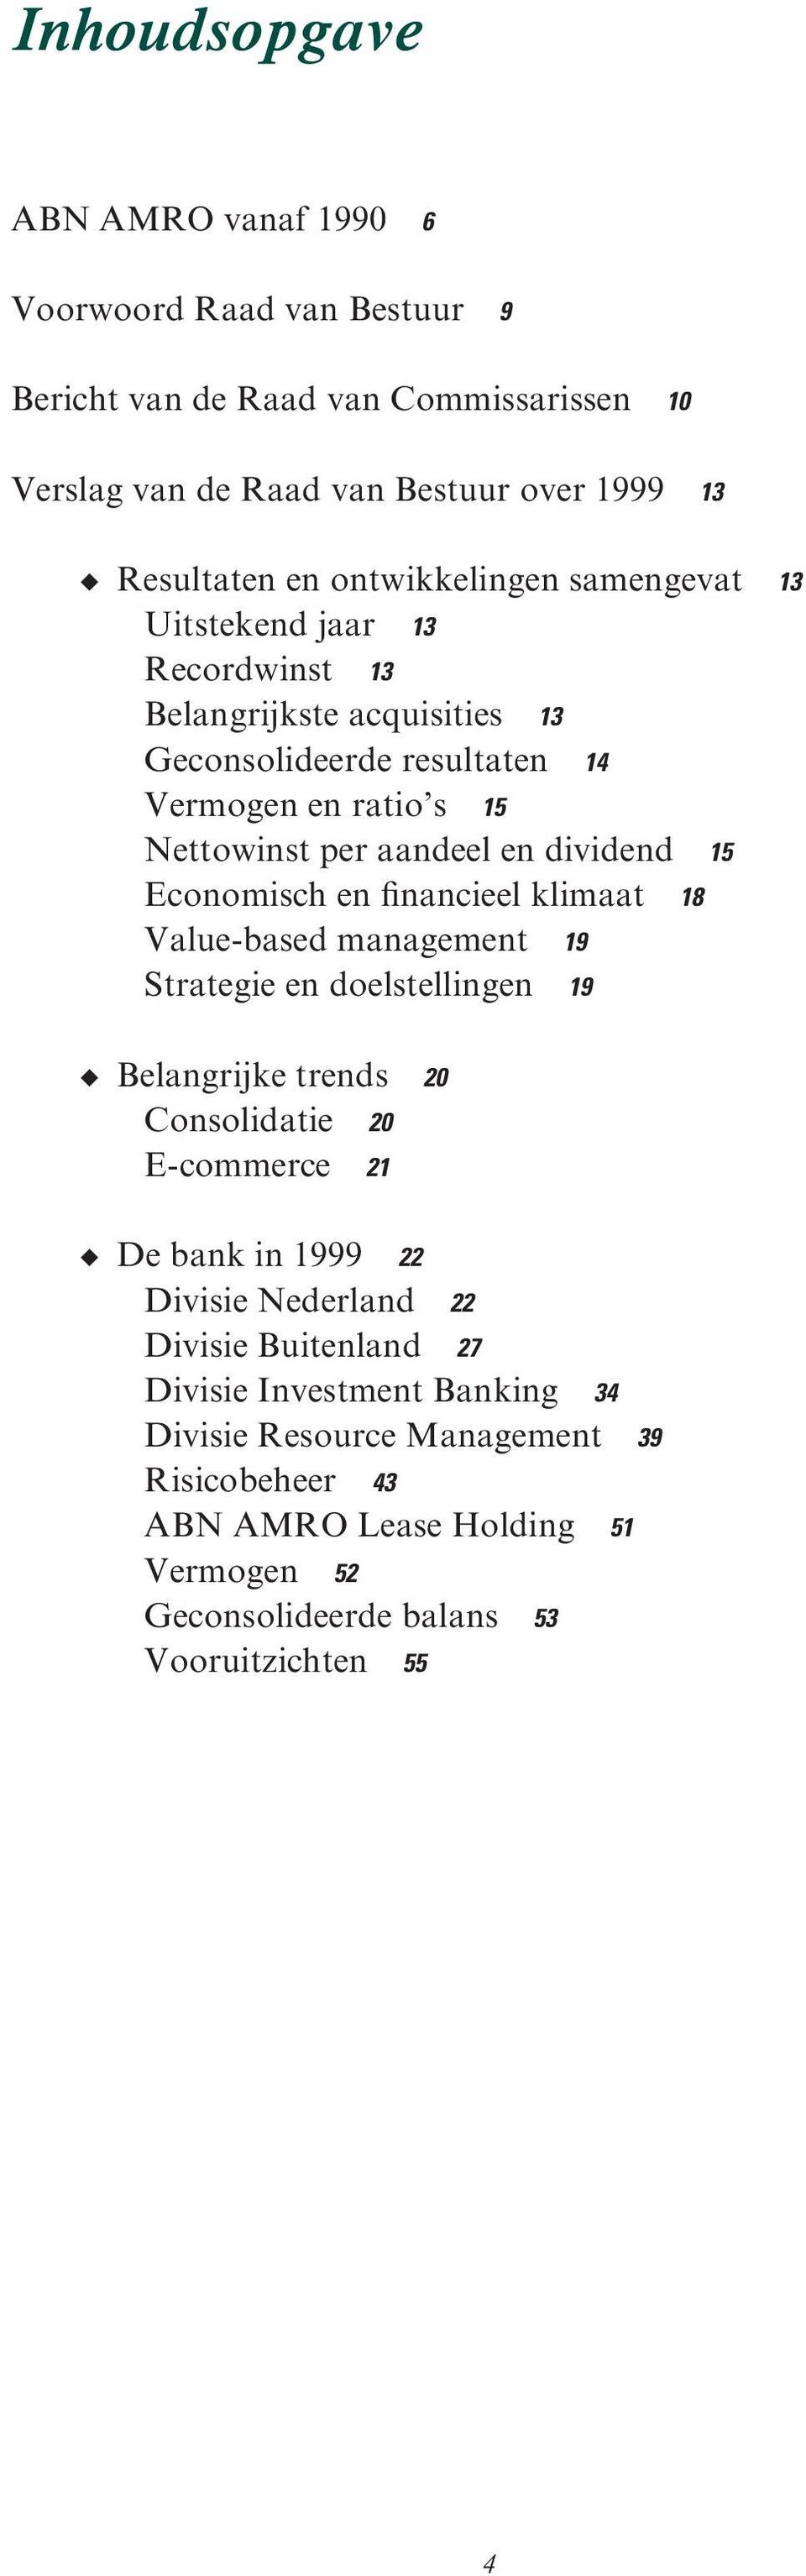 dividend 15 Economisch en financieel klimaat 18 Value-based management 19 Strategie en doelstellingen 19 Belangrijke trends 20 Consolidatie 20 E-commerce 21 De bank in 1999 22